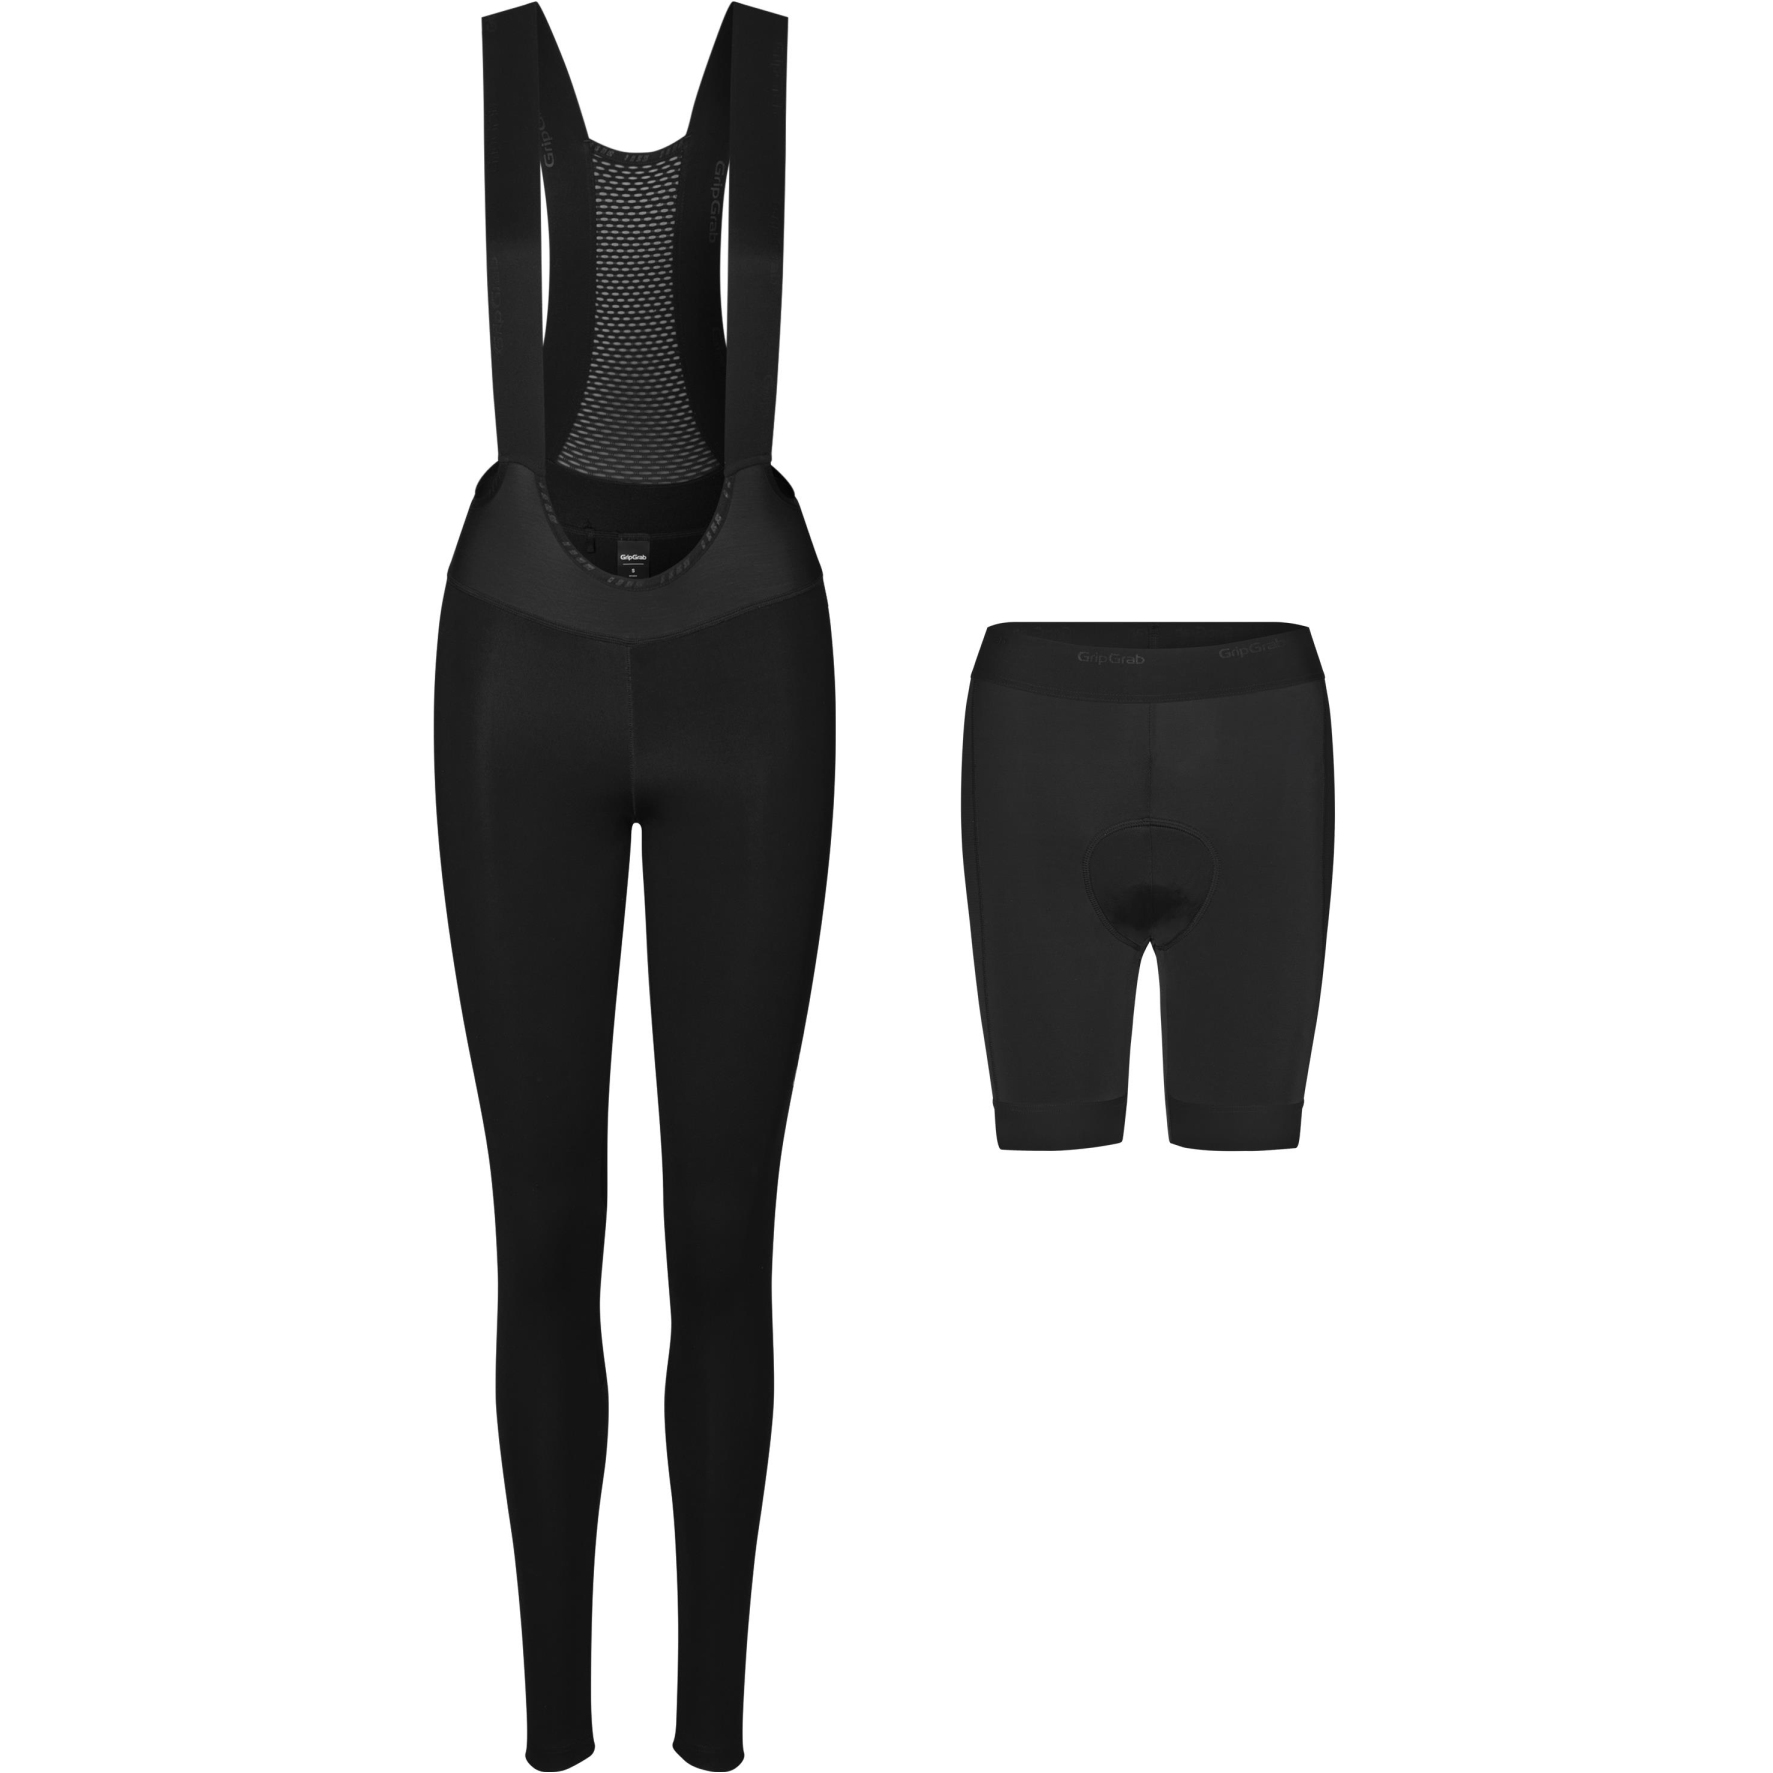 Produktbild von GripGrab ThermaShell Wasserabweisende Trägerhose Damen - schwarz